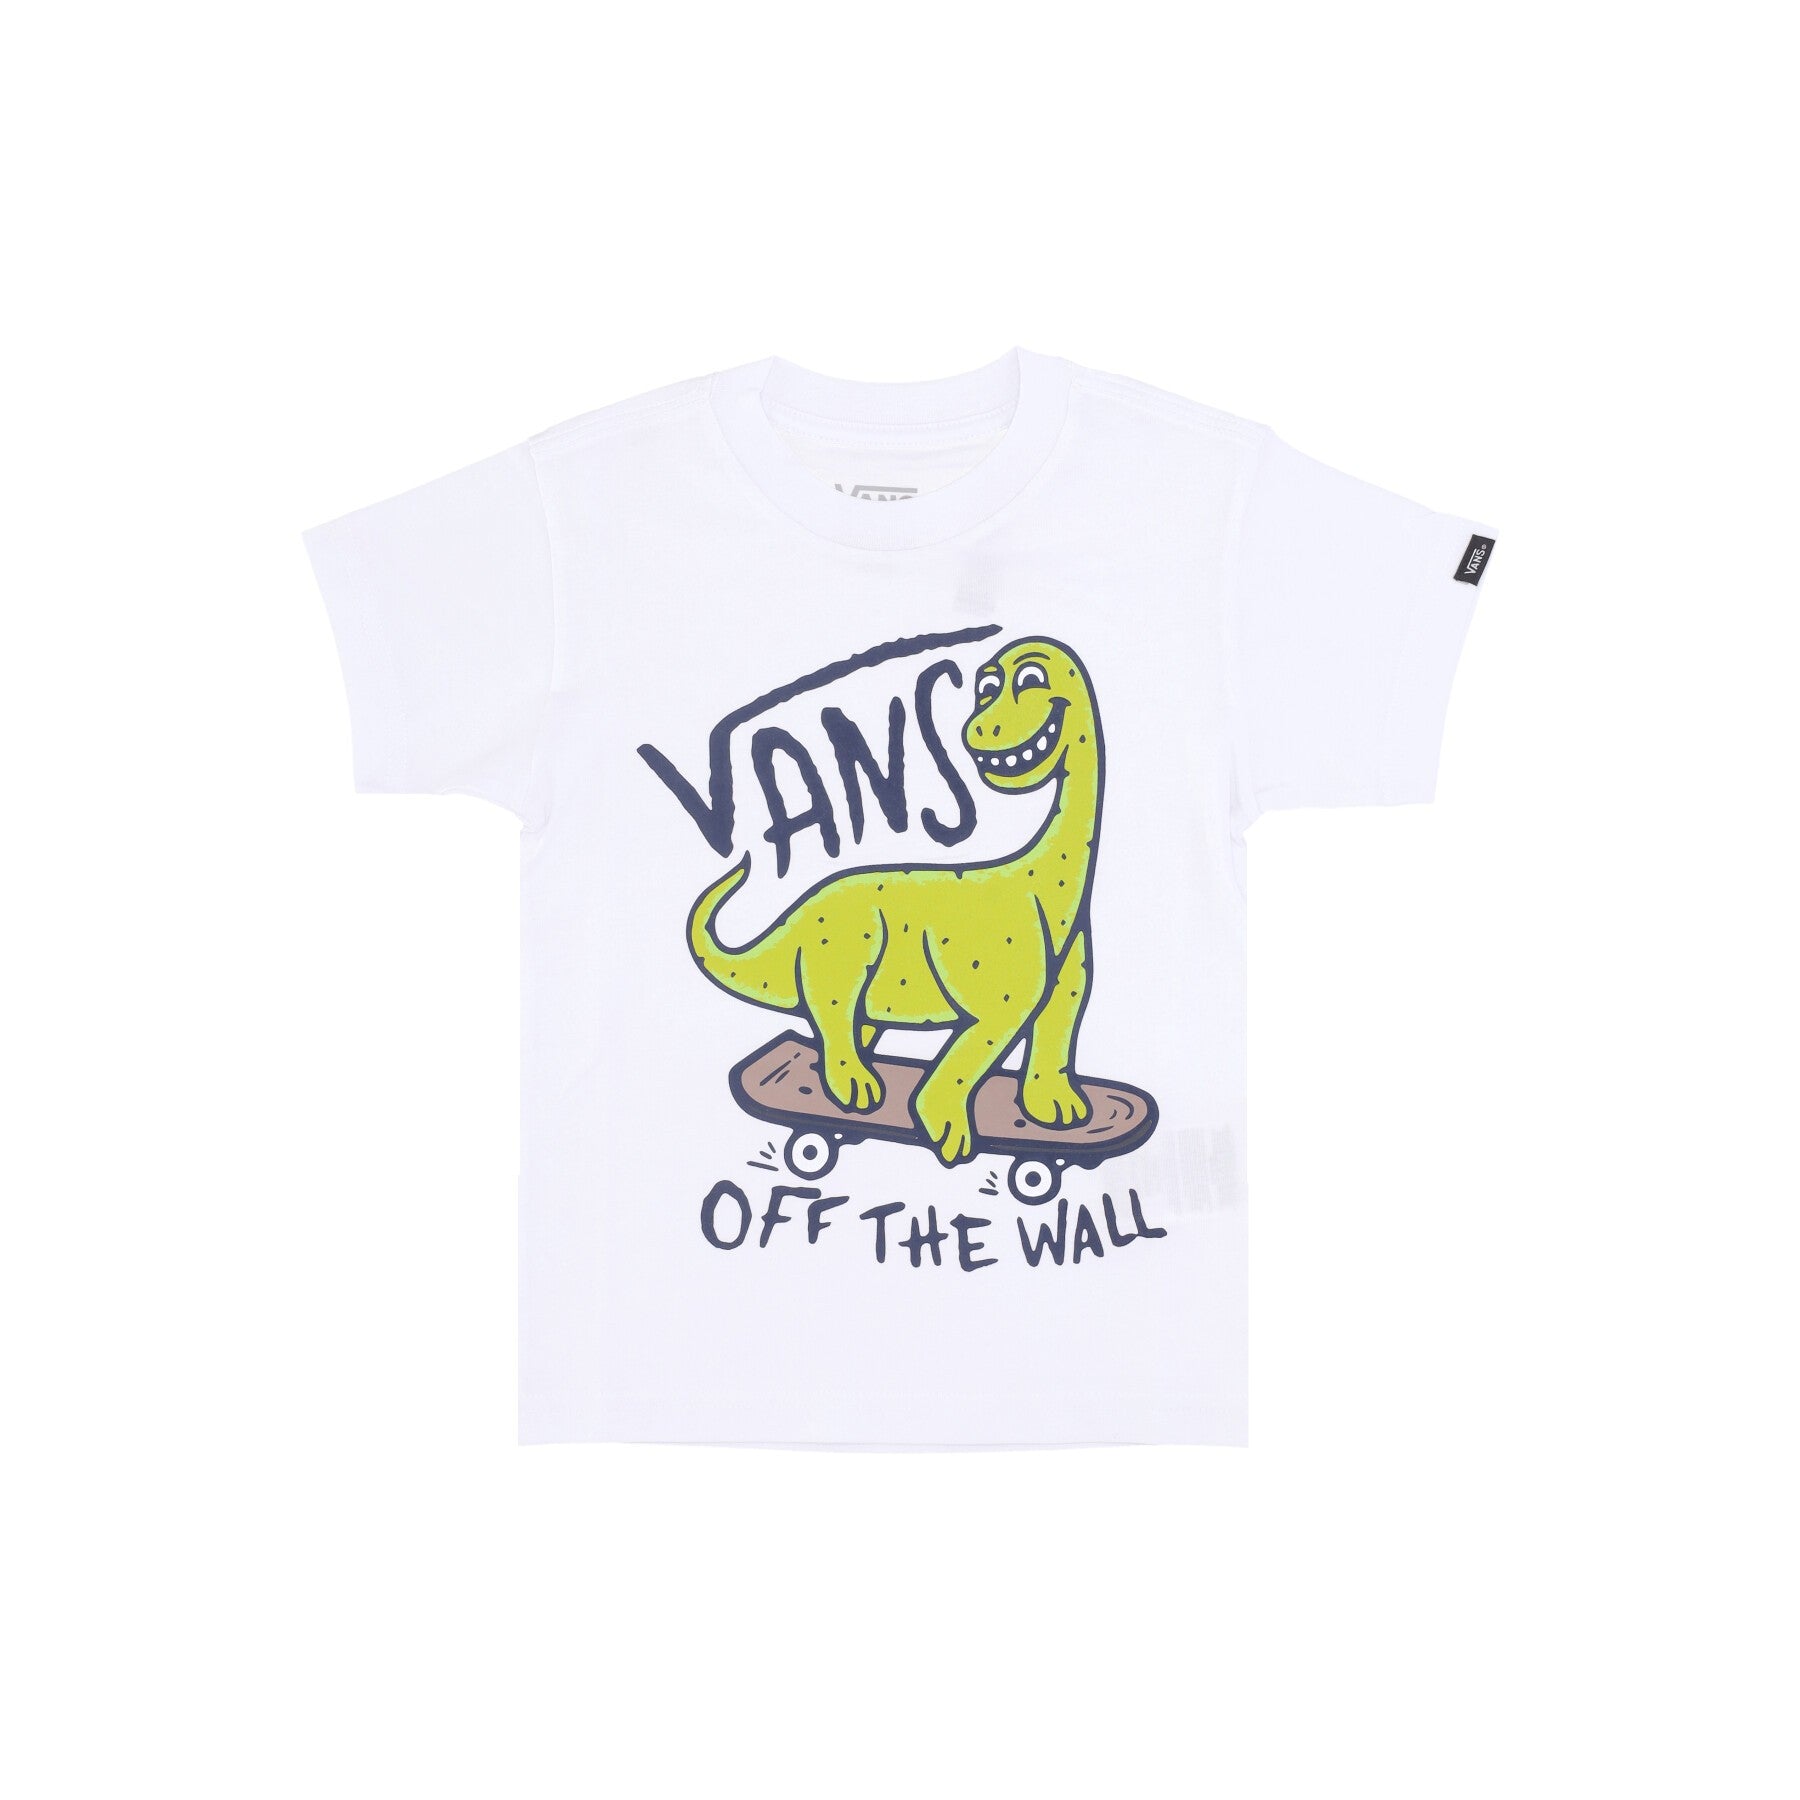 Dinosk8 Tee White Child T-Shirt